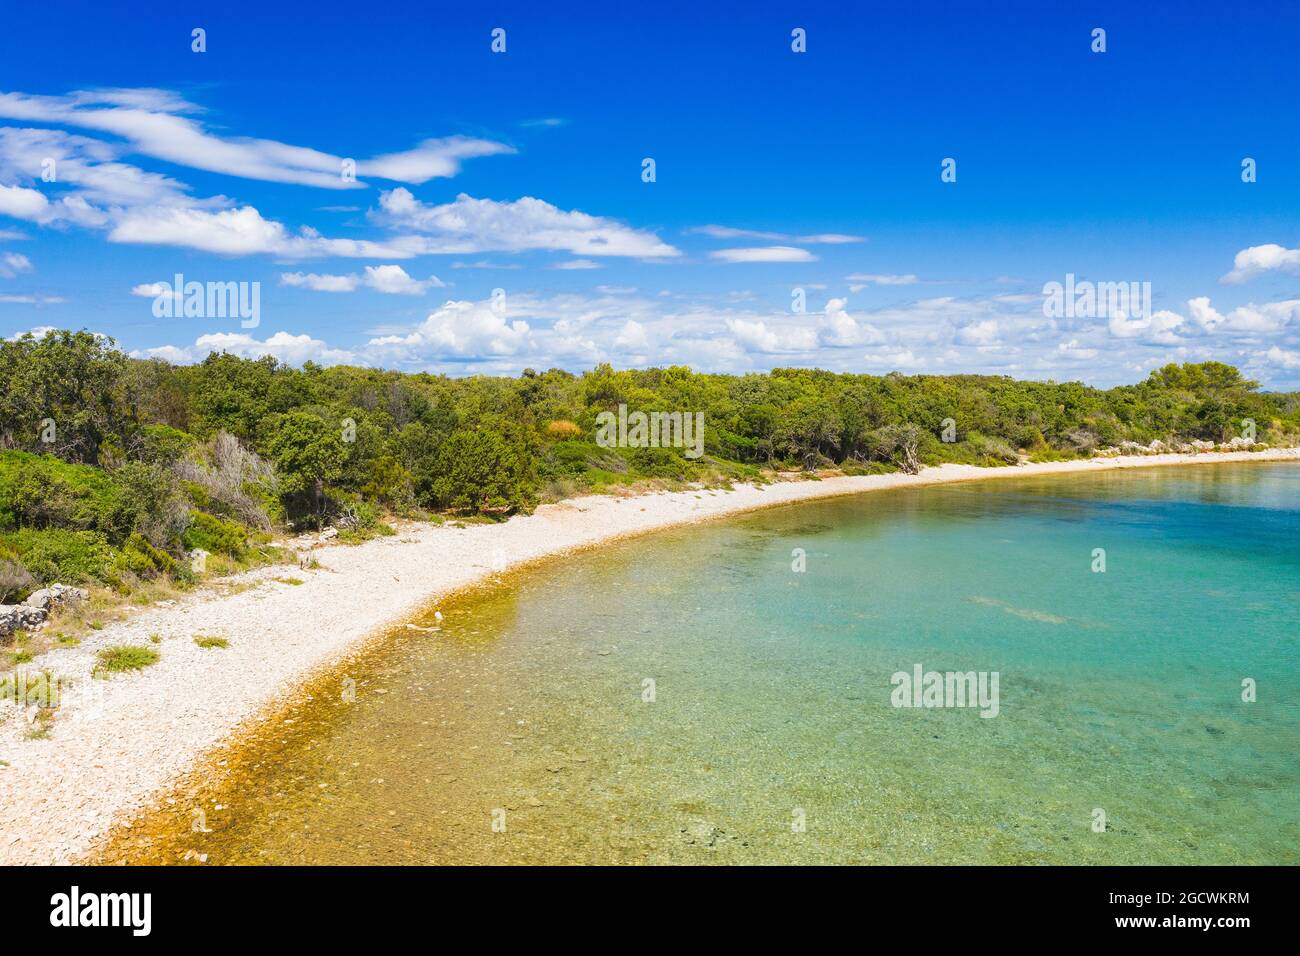 Magnifique côte Adriatique en Croatie. Plage de lagon turquoise sur l'île de Dugi Otok, magnifique paysage méditerranéen. Paradis du yachting. Banque D'Images